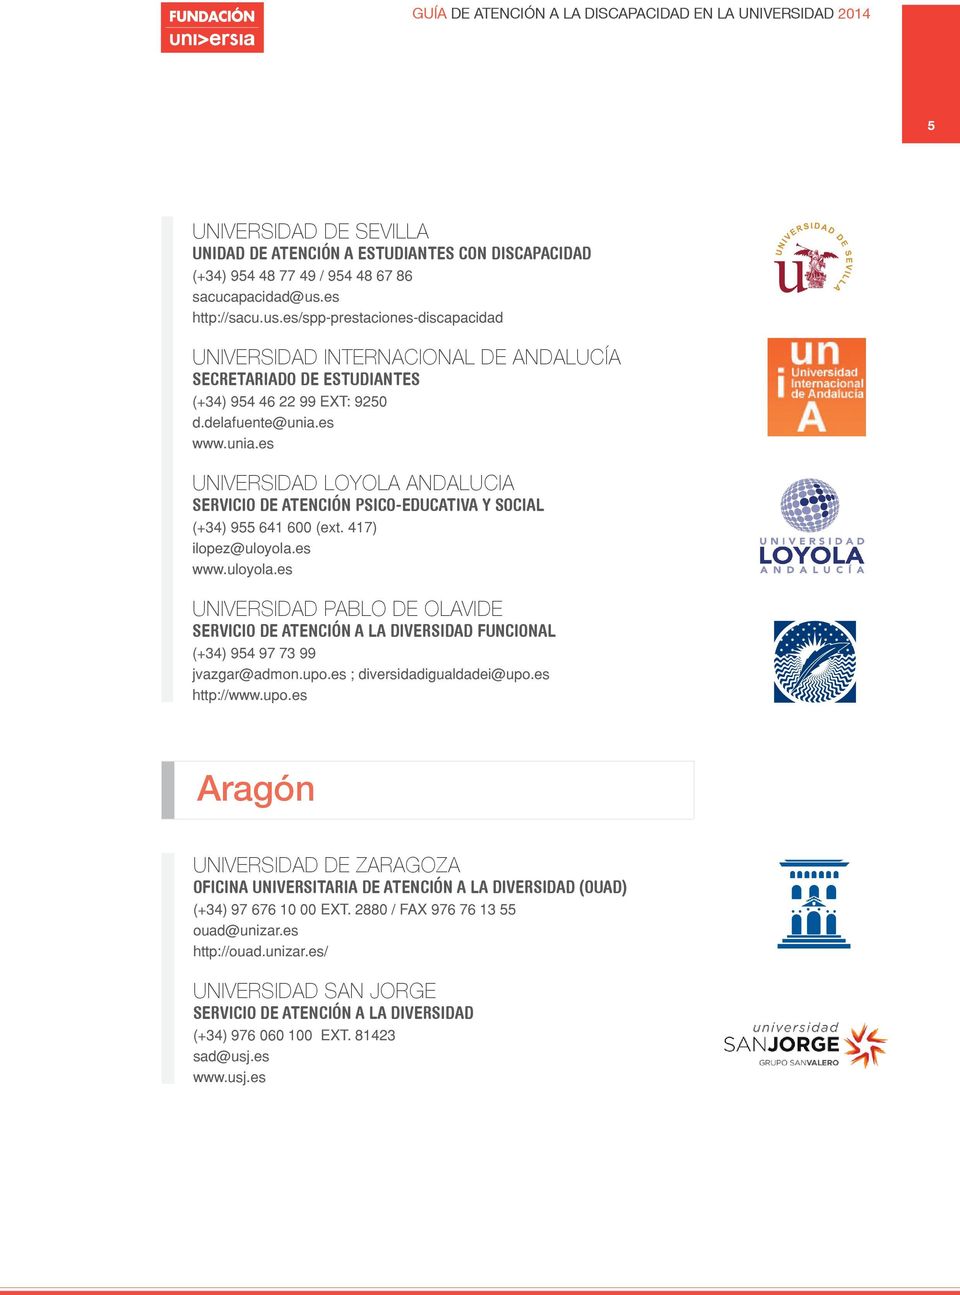 es www.unia.es Universidad LOYOLa andalucia servicio de atención psico-educativa Y social (+34) 955 641 600 (ext. 417) ilopez@uloyola.